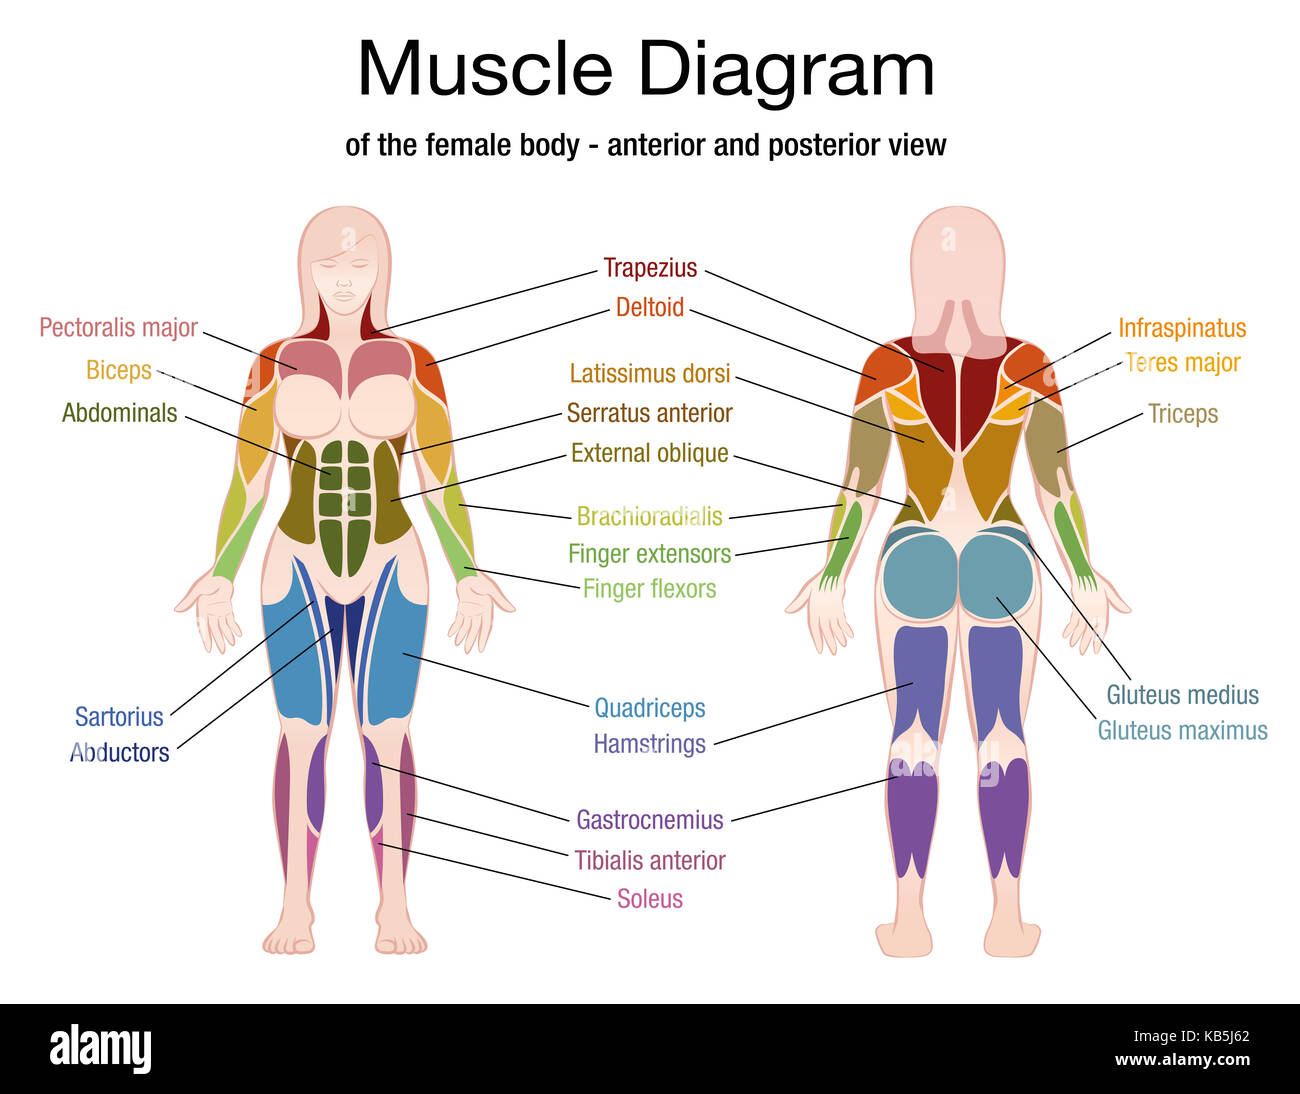 Schema muscolare del corpo femmina con descrizione accurata delle più importanti i muscoli - Vista anteriore e posteriore - illustrazione su sfondo bianco. Foto Stock